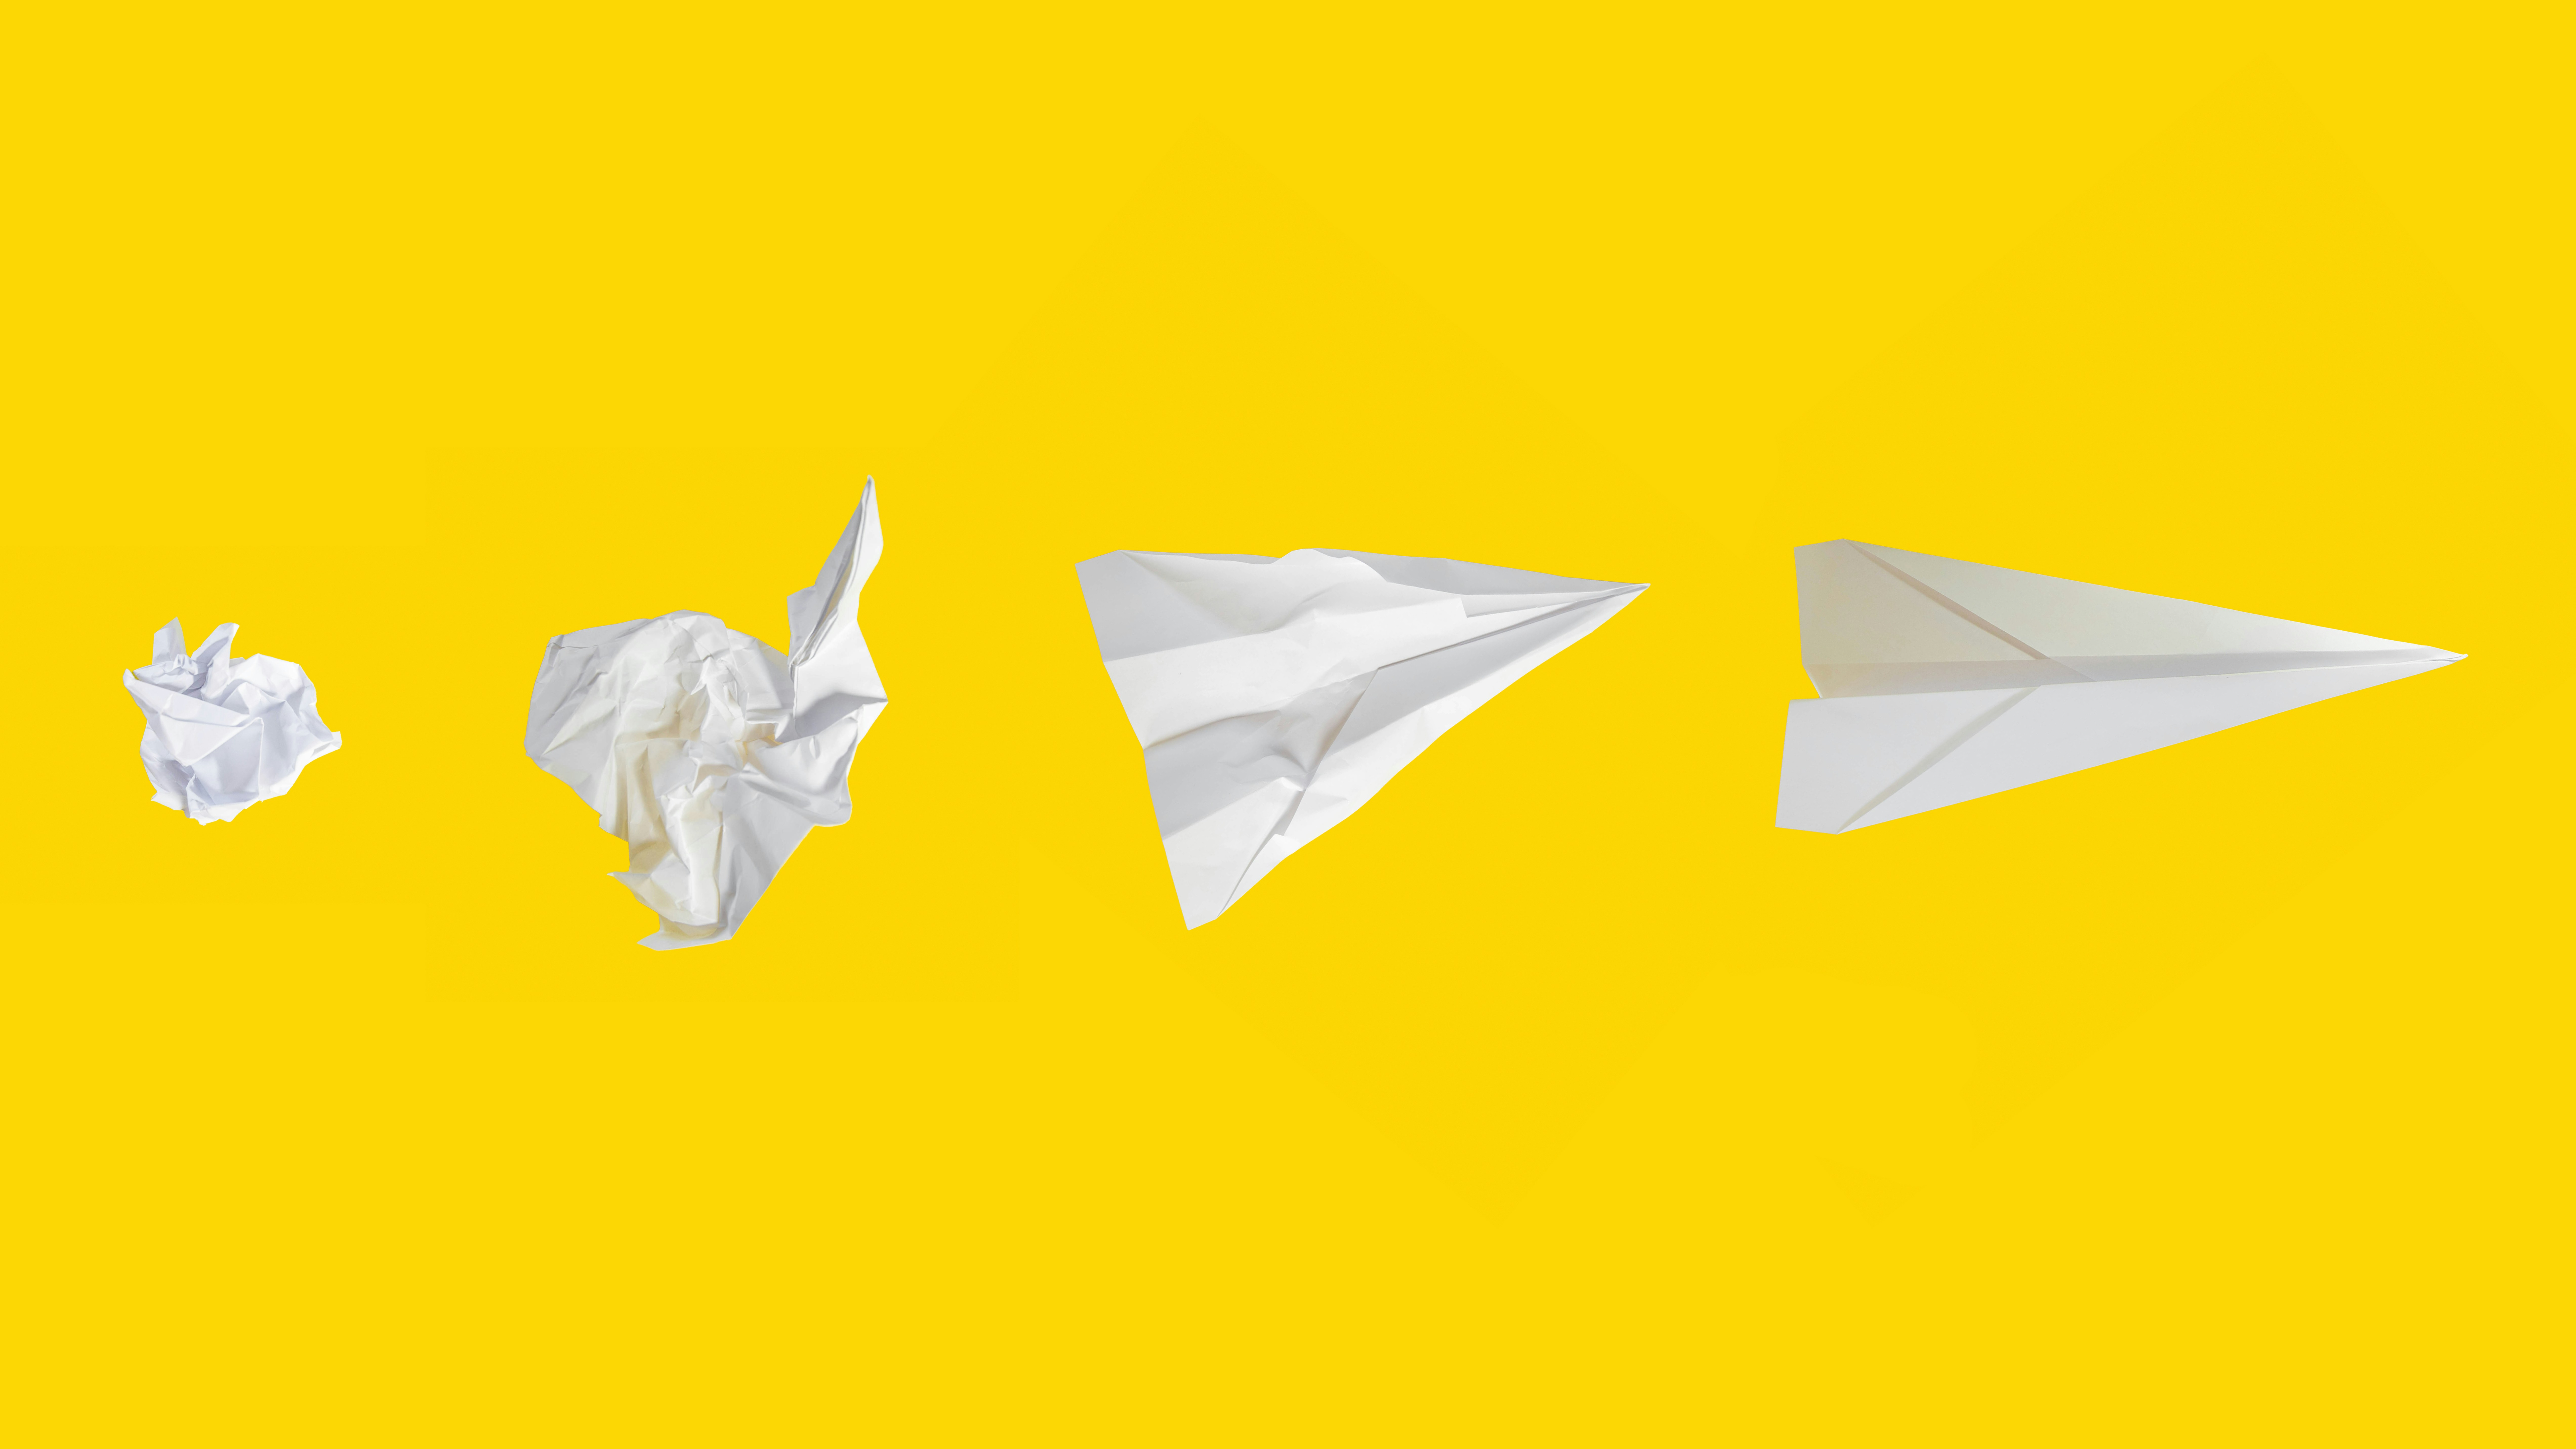 Paper airplane photo by Matt Ridley on Unsplash